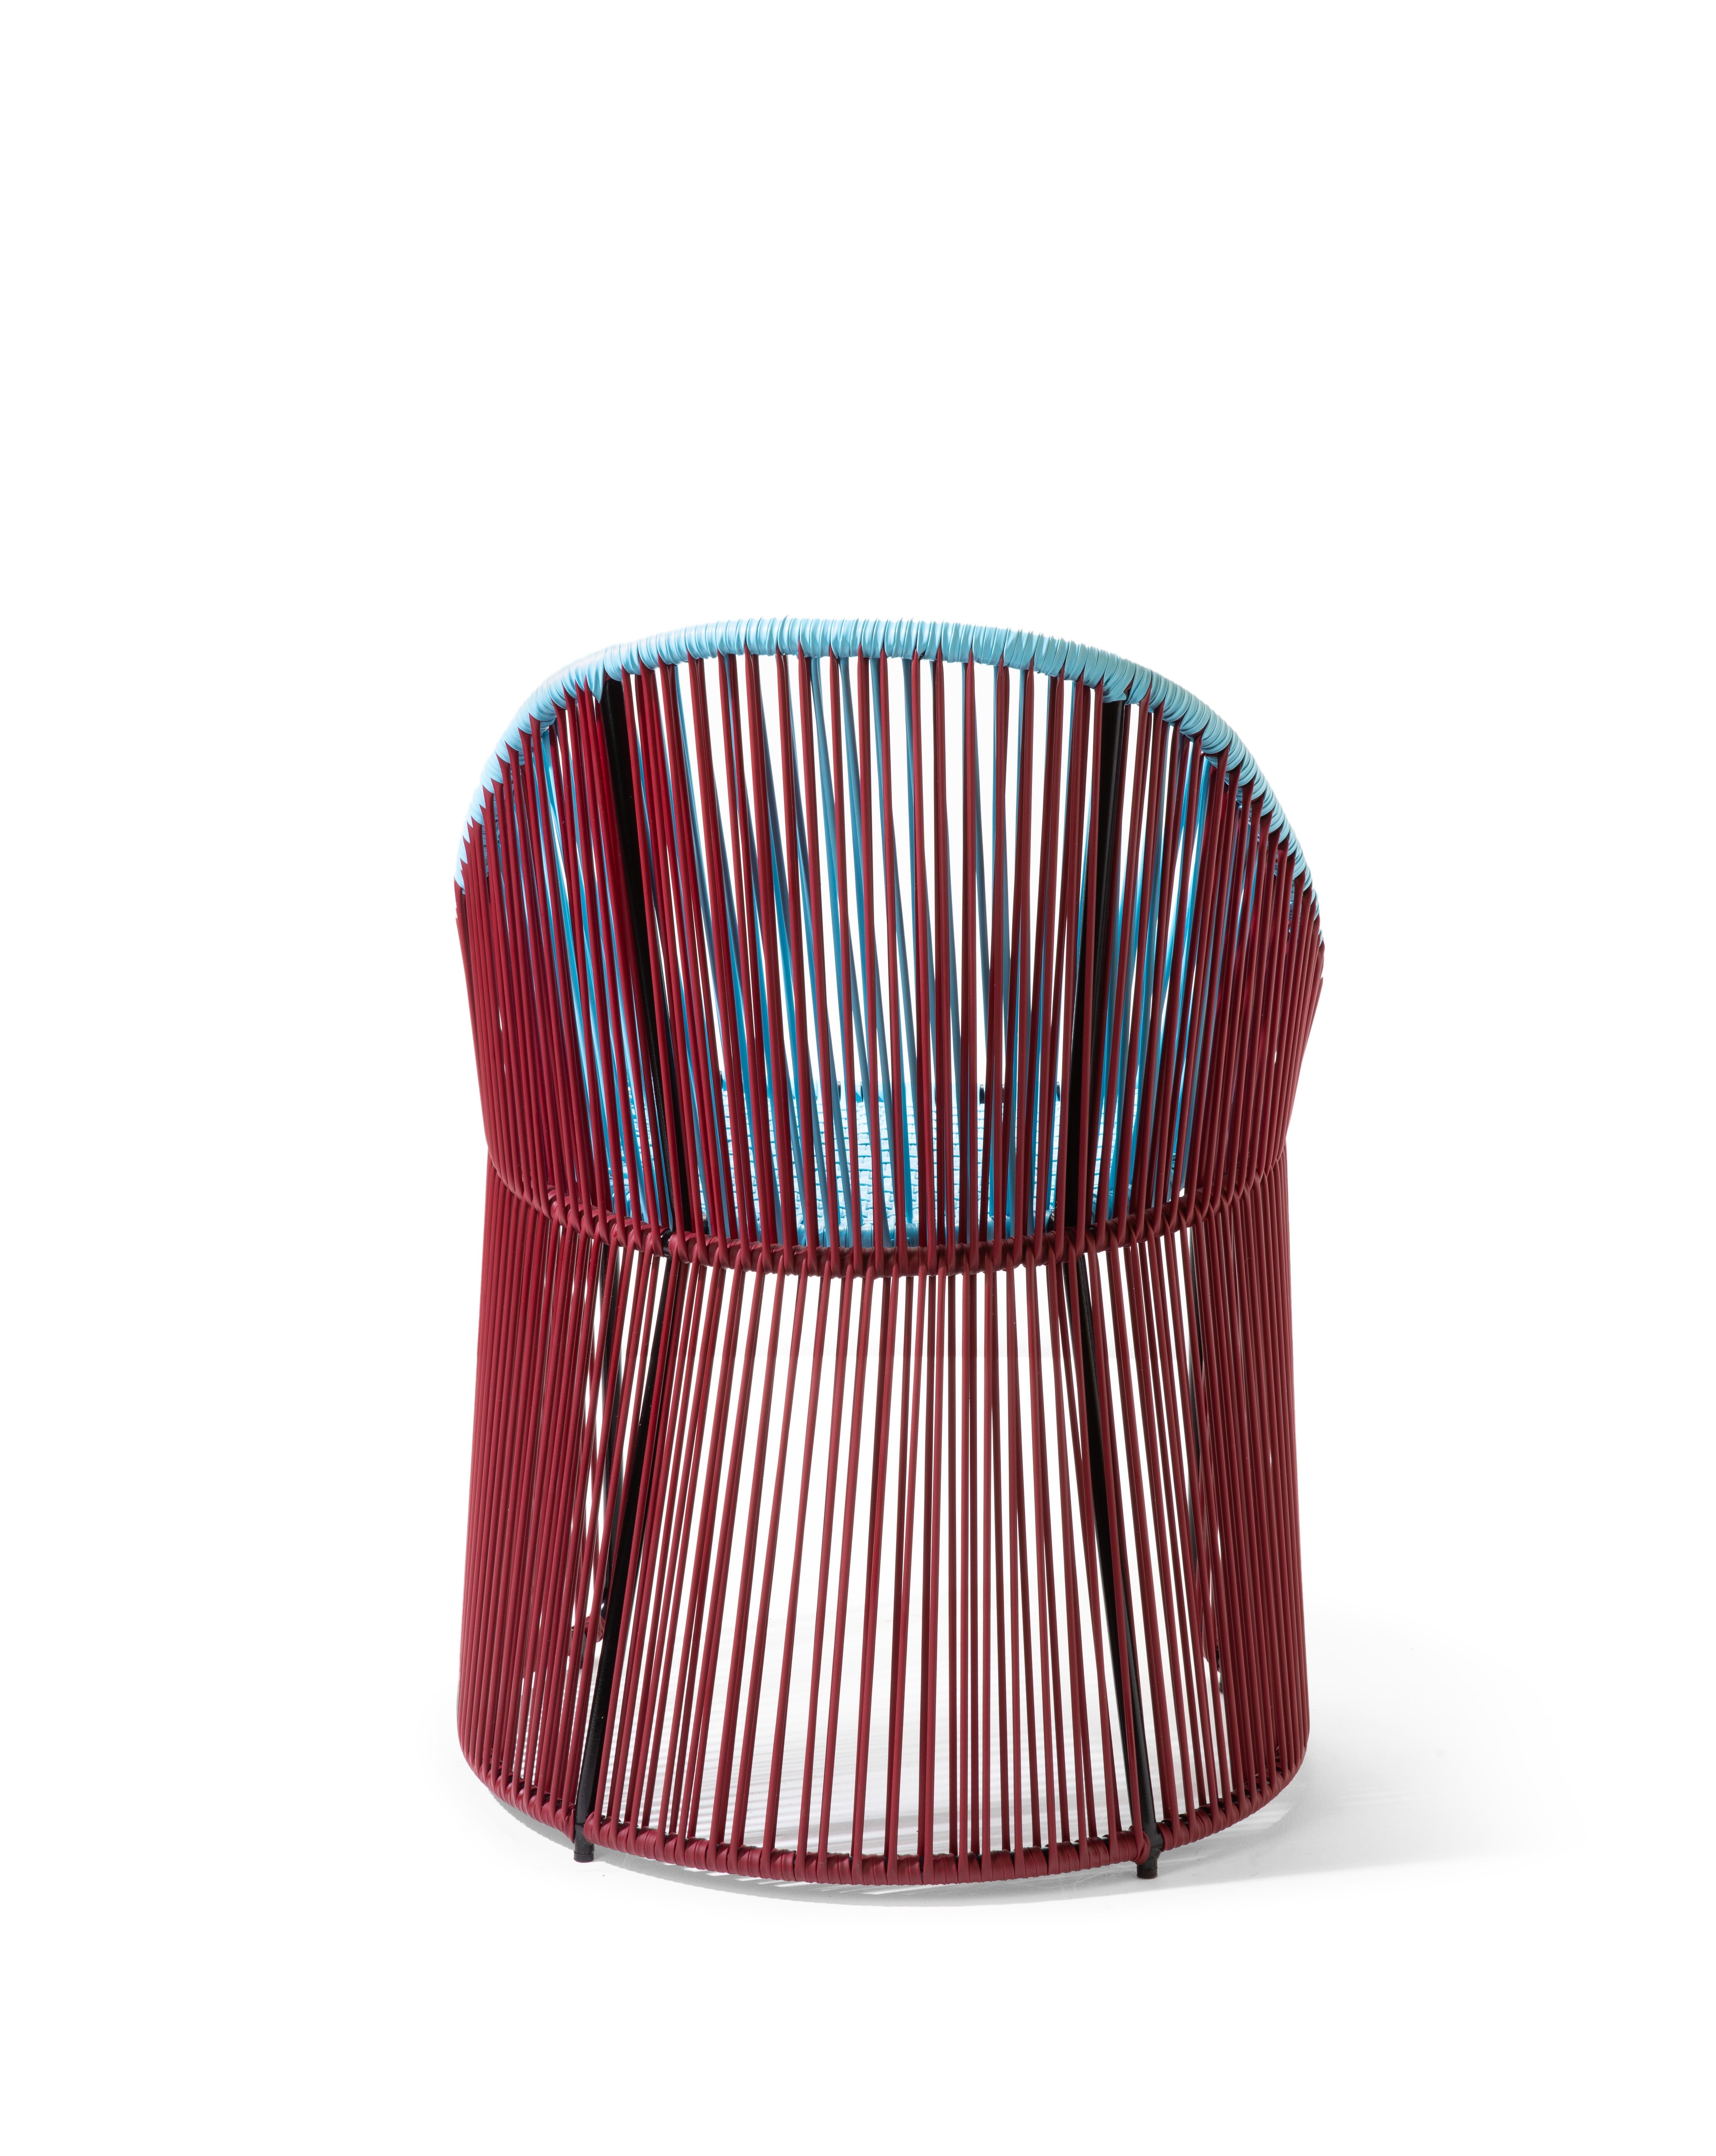 German Blue Cartagenas Dining Chair by Sebastian Herkner For Sale